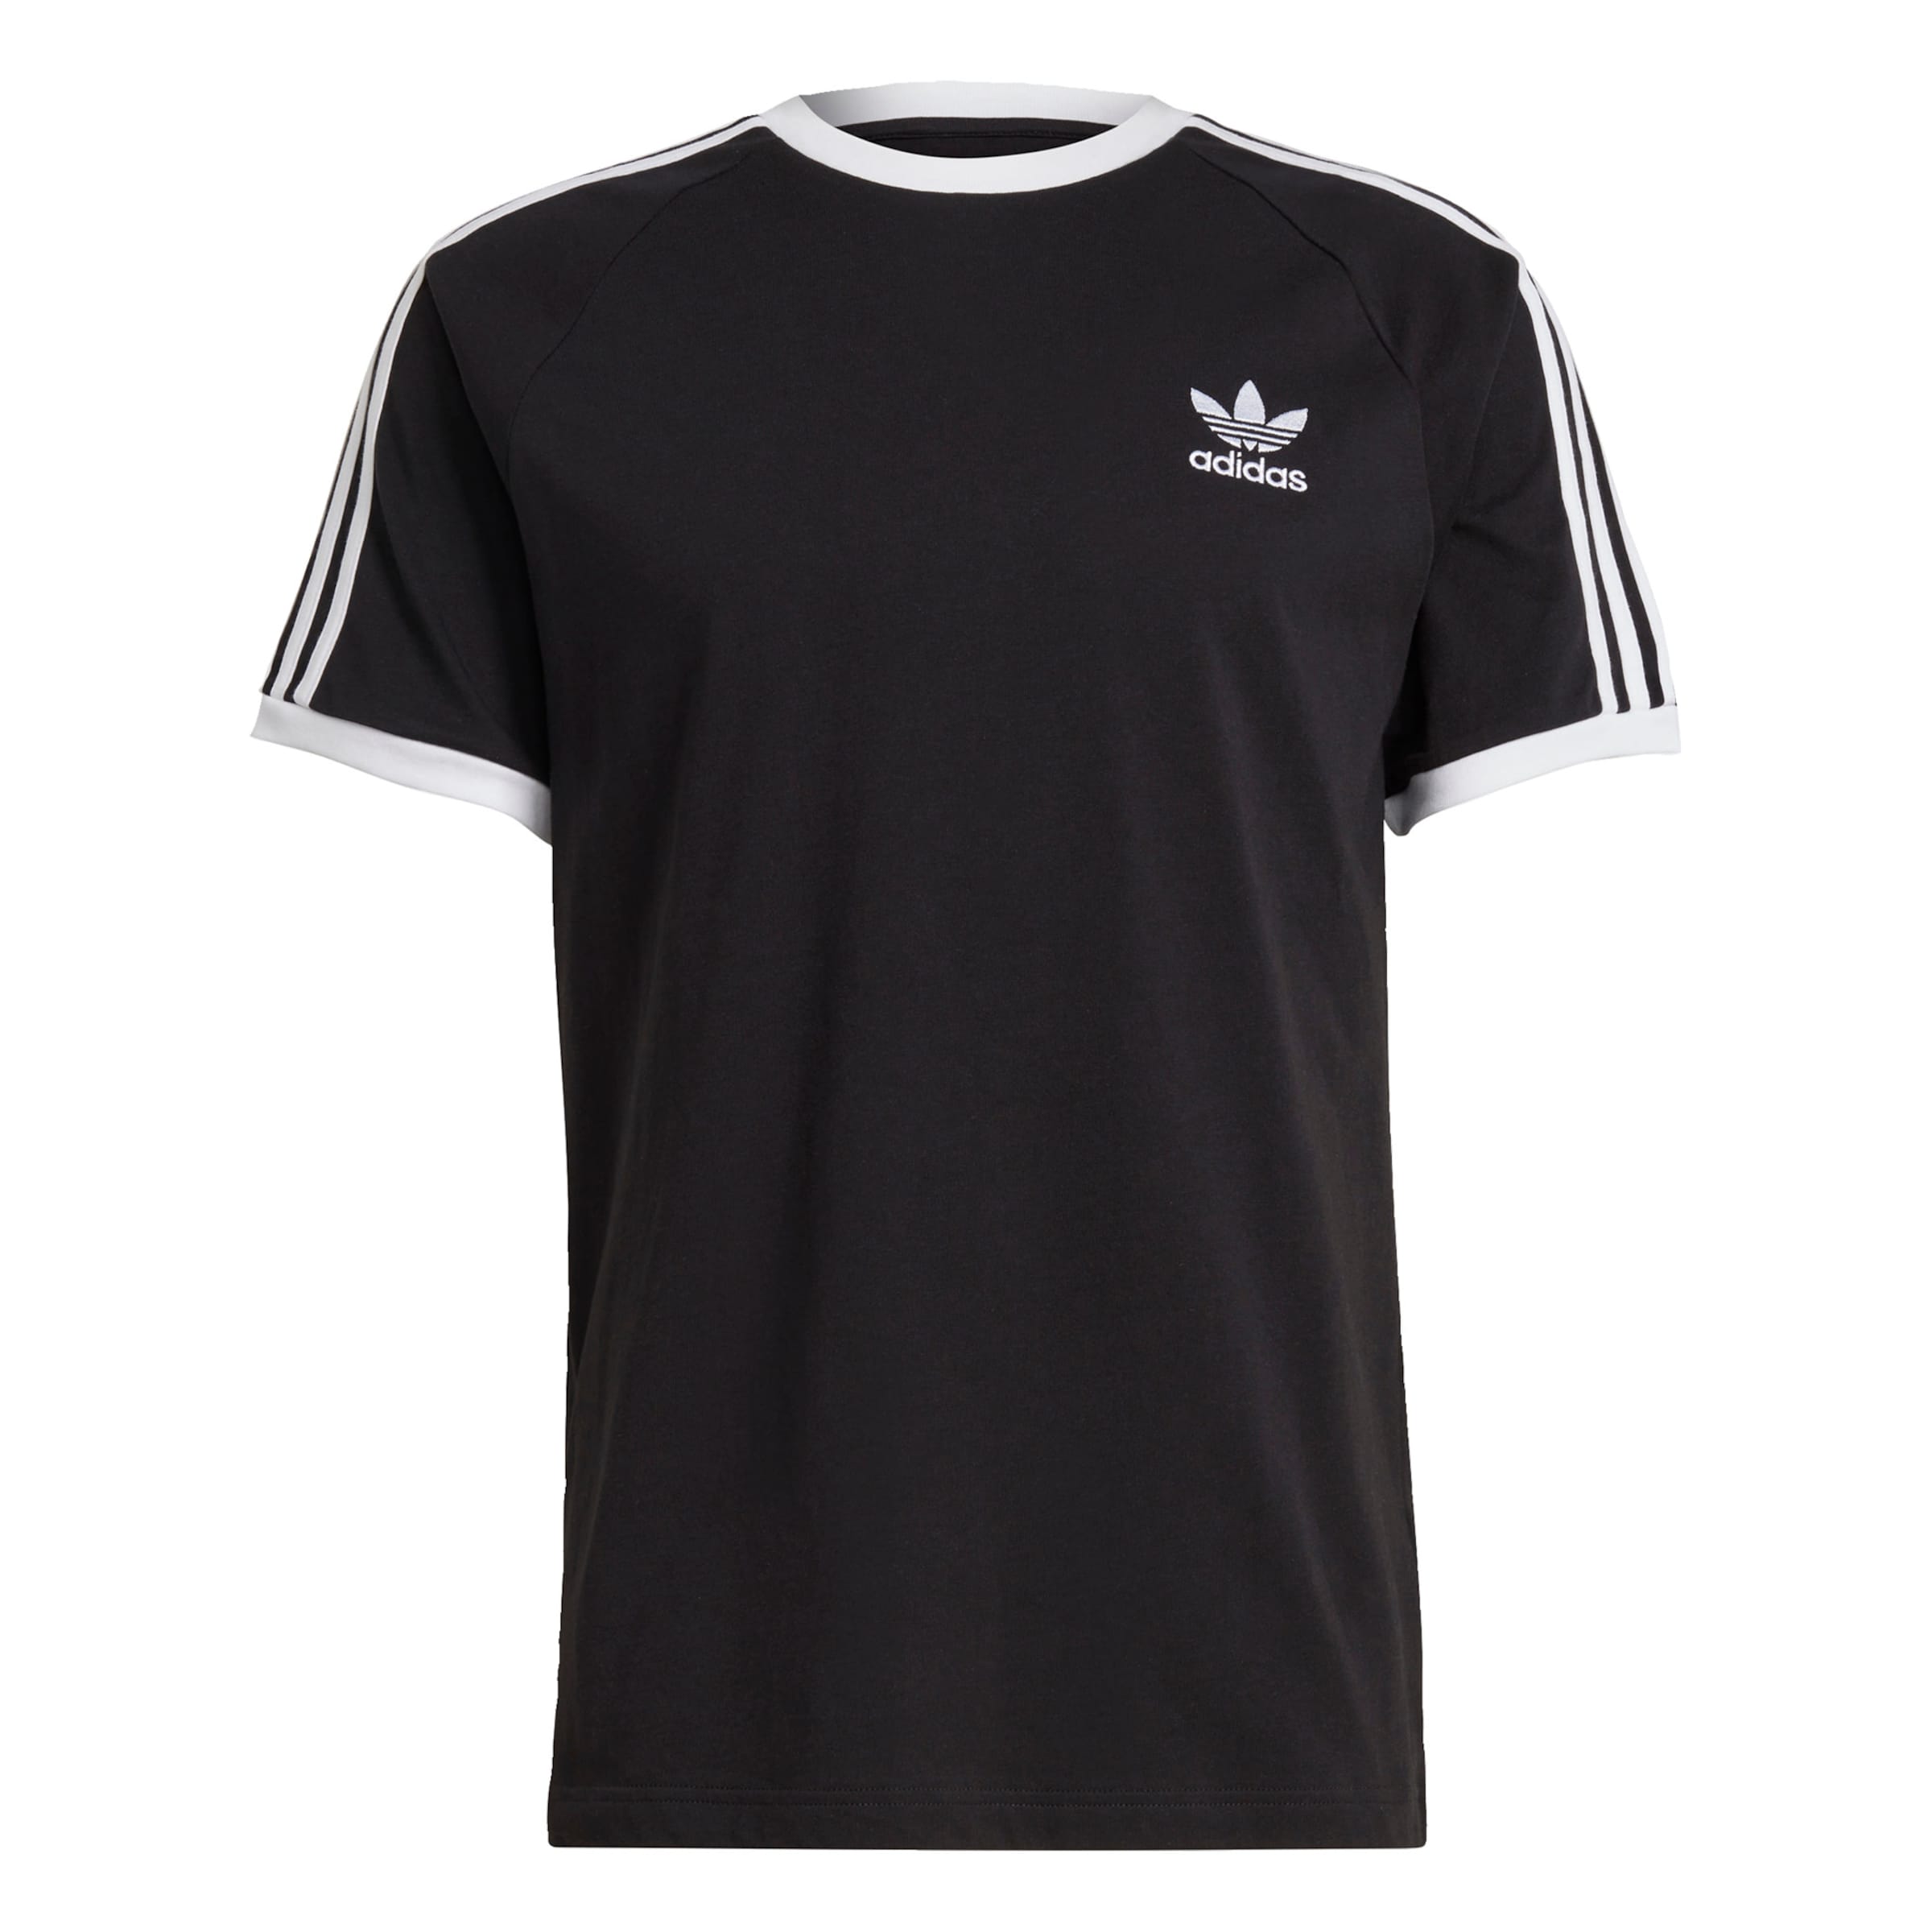 Adidas T-Shirt Rosa M DAMEN Hemden & T-Shirts Sport Rabatt 28 % 